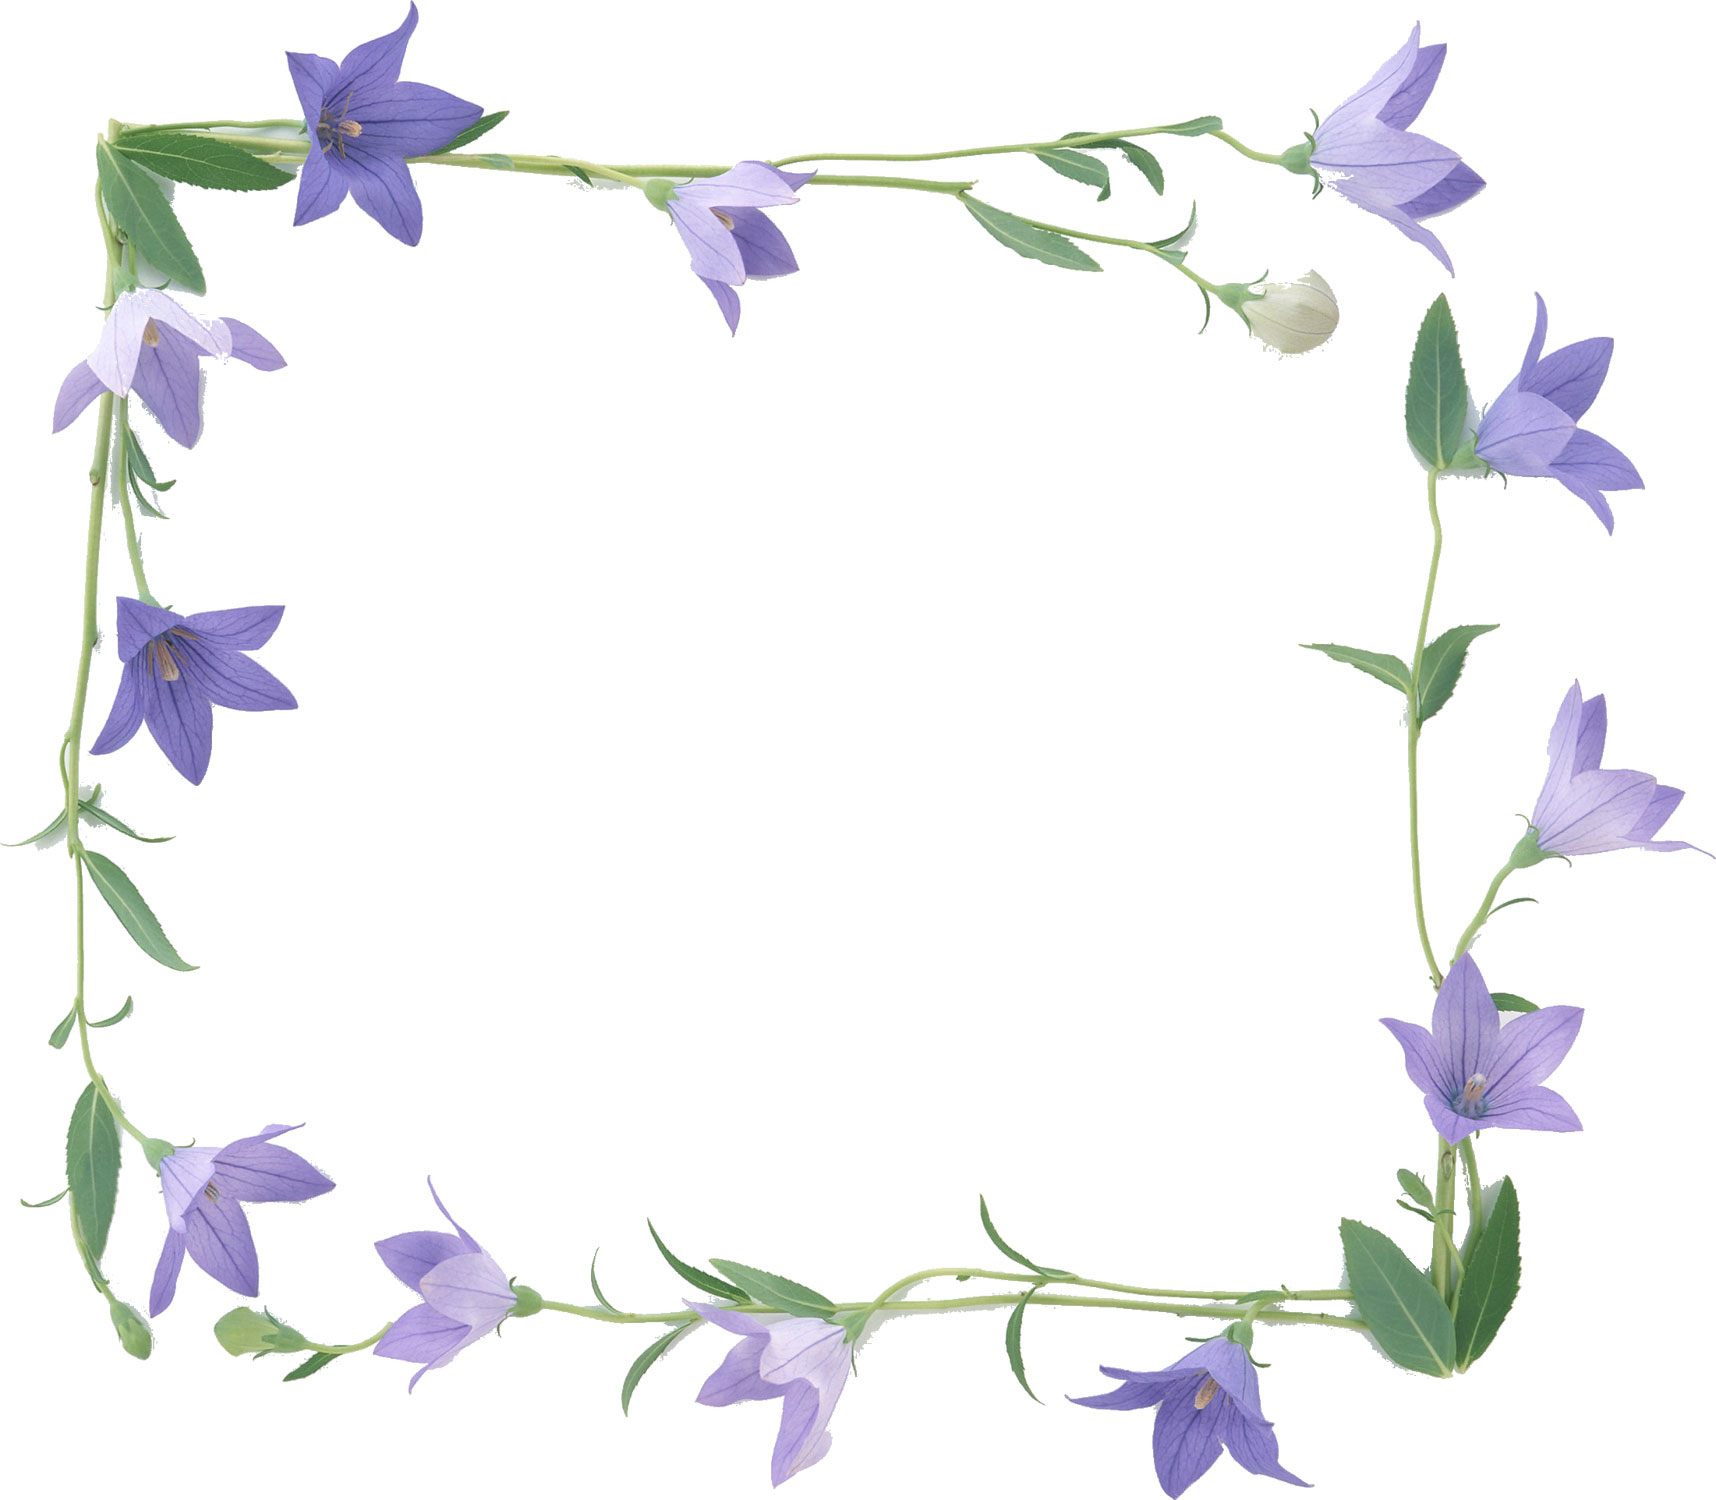 青い花の写真 フリー素材 No 484 紫 桔梗 りんどう 葉